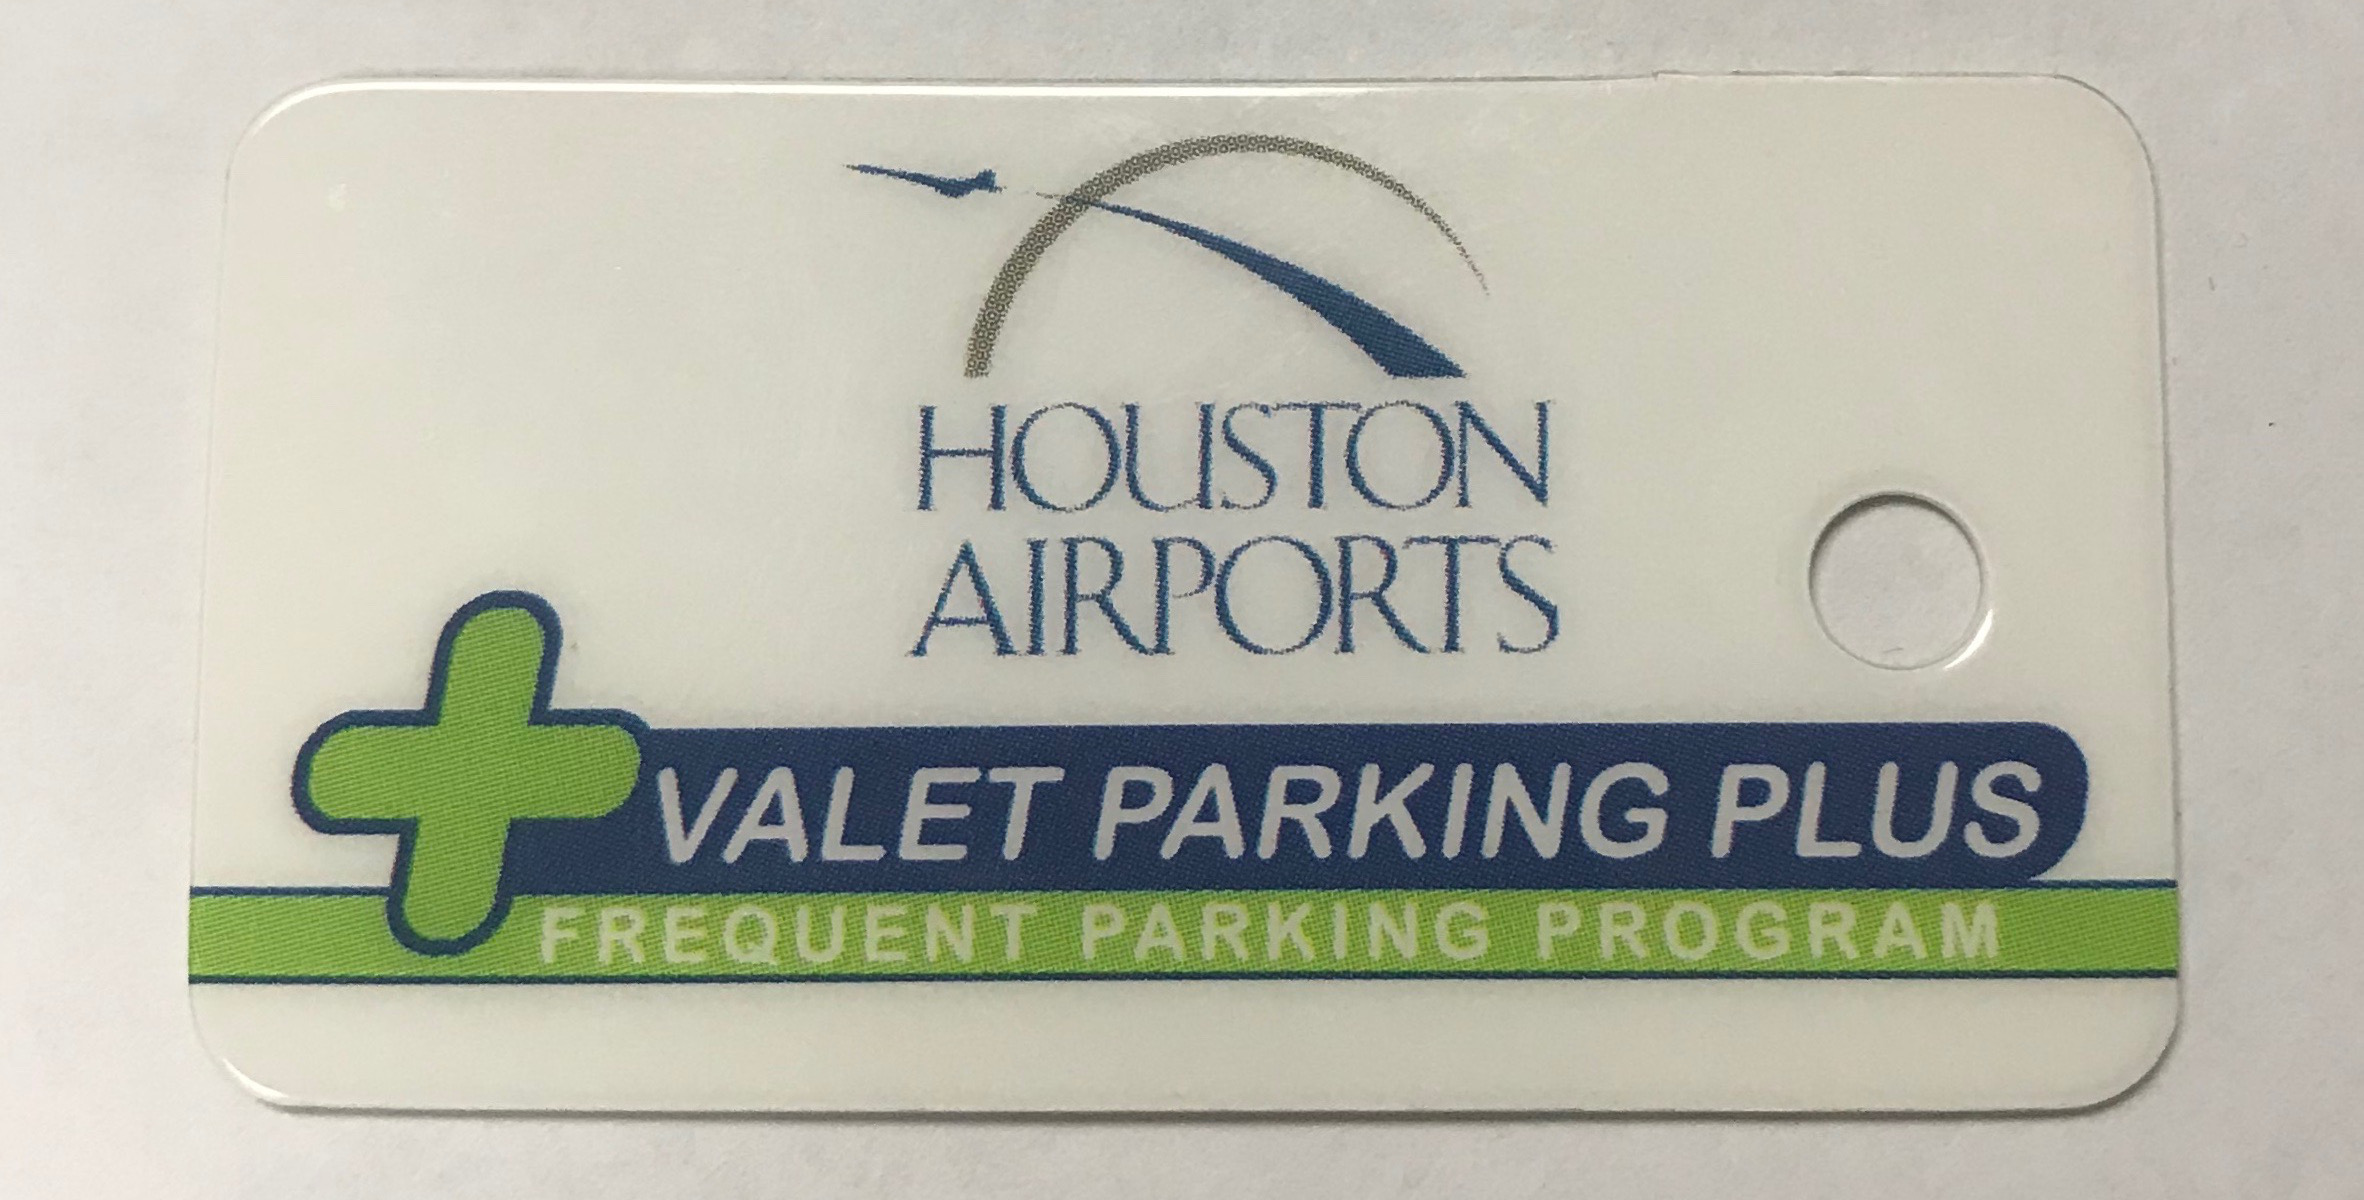 A Valet Parking Plus card